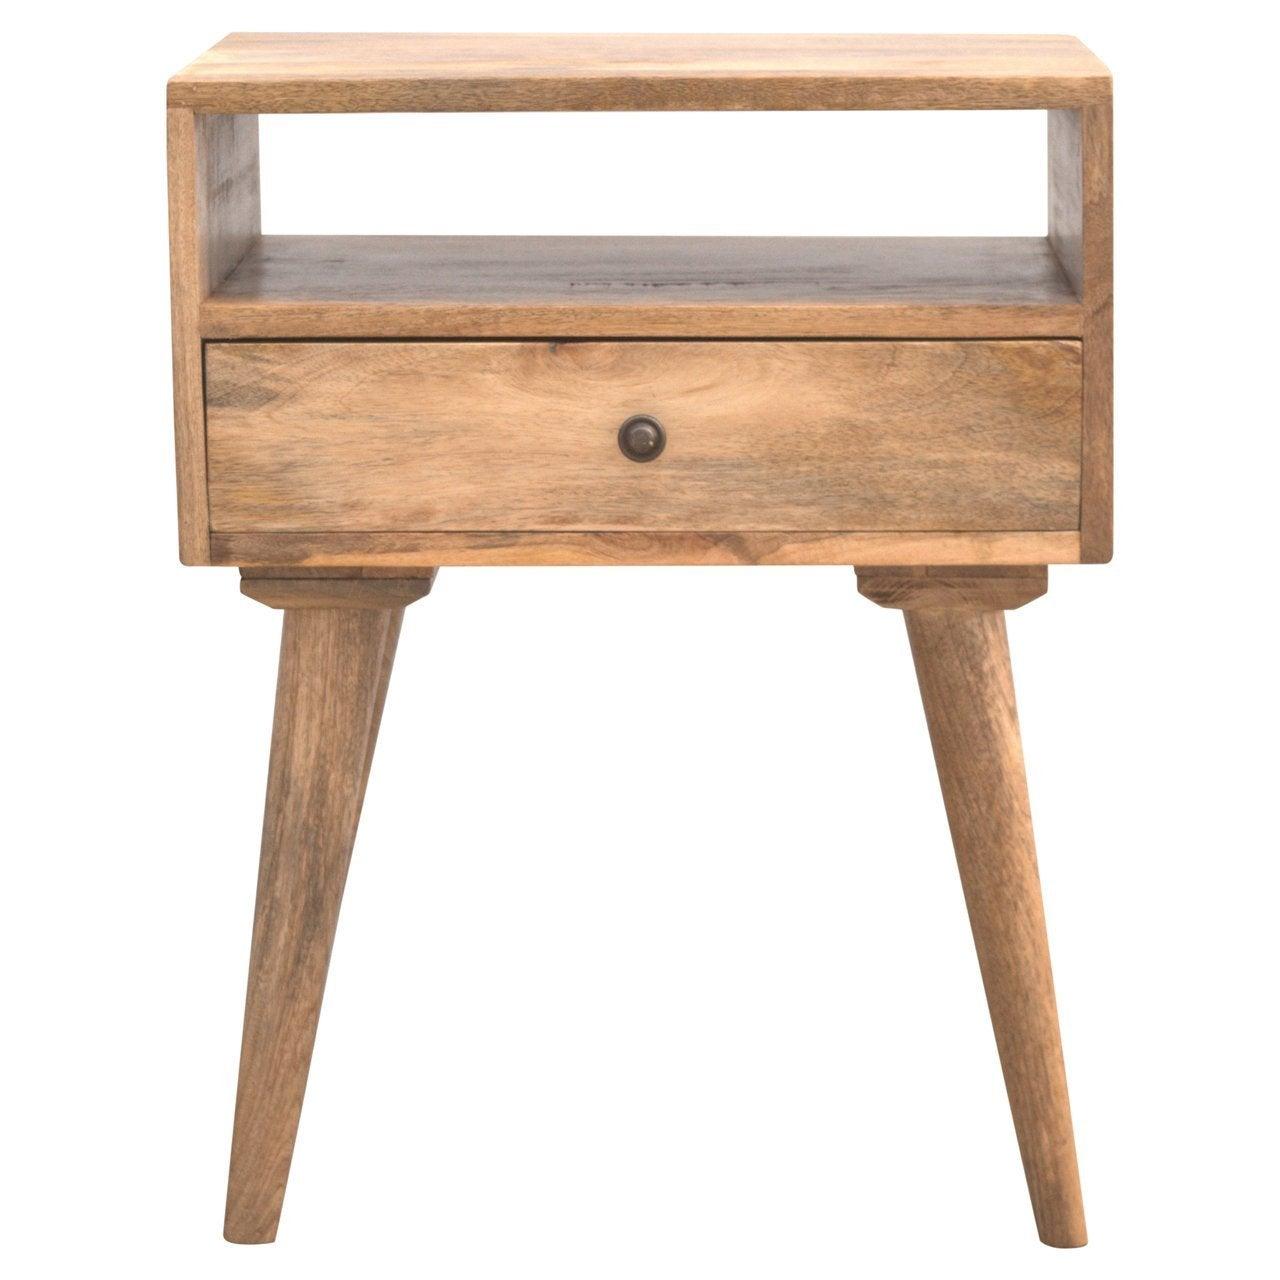 Modern solid wood bedside table with open slot - crimblefest furniture - image 1